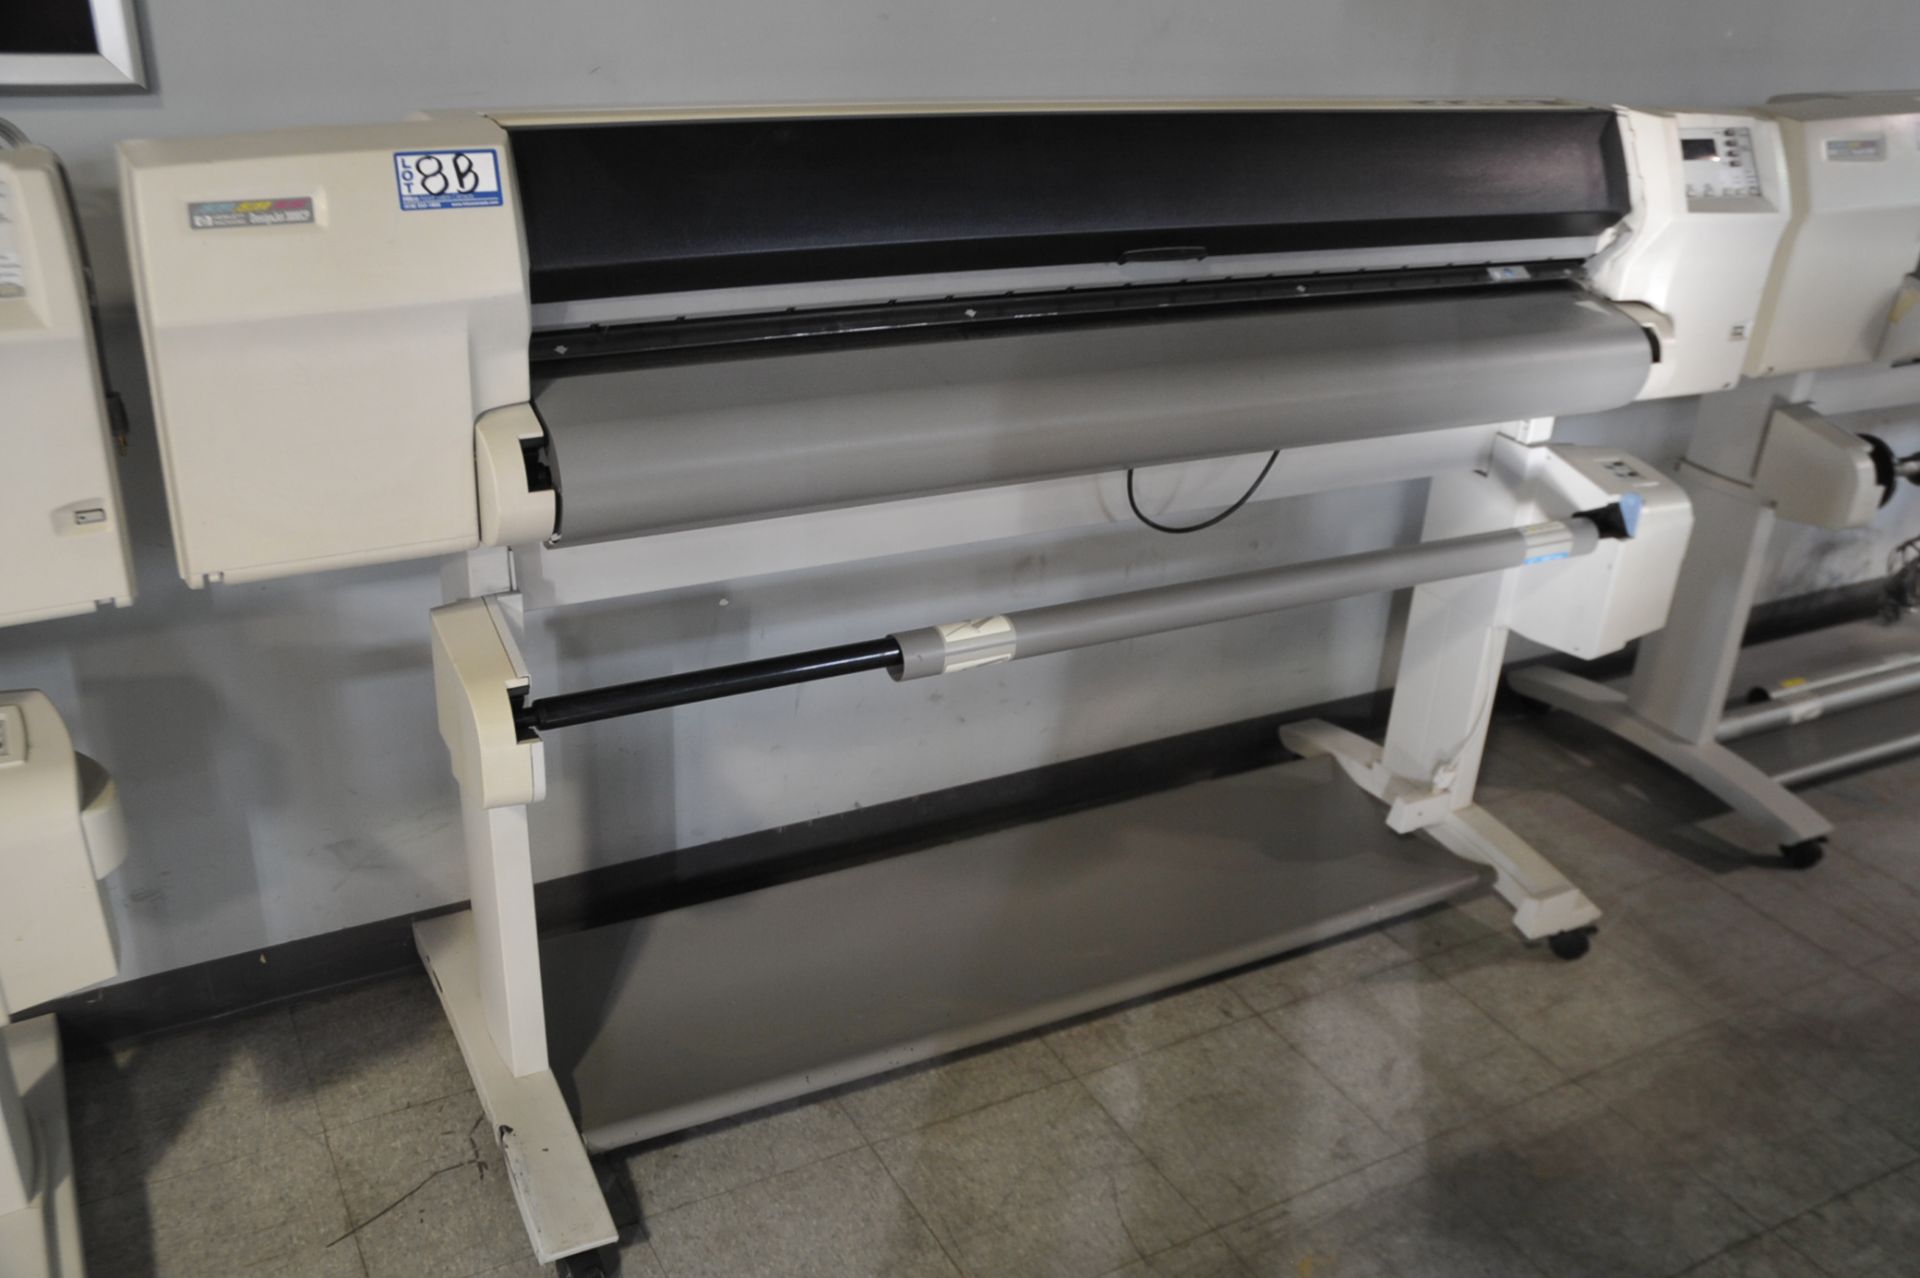 HP Model Design Jet 3000 CP Poster Printer; Serial Number: ESA8300235